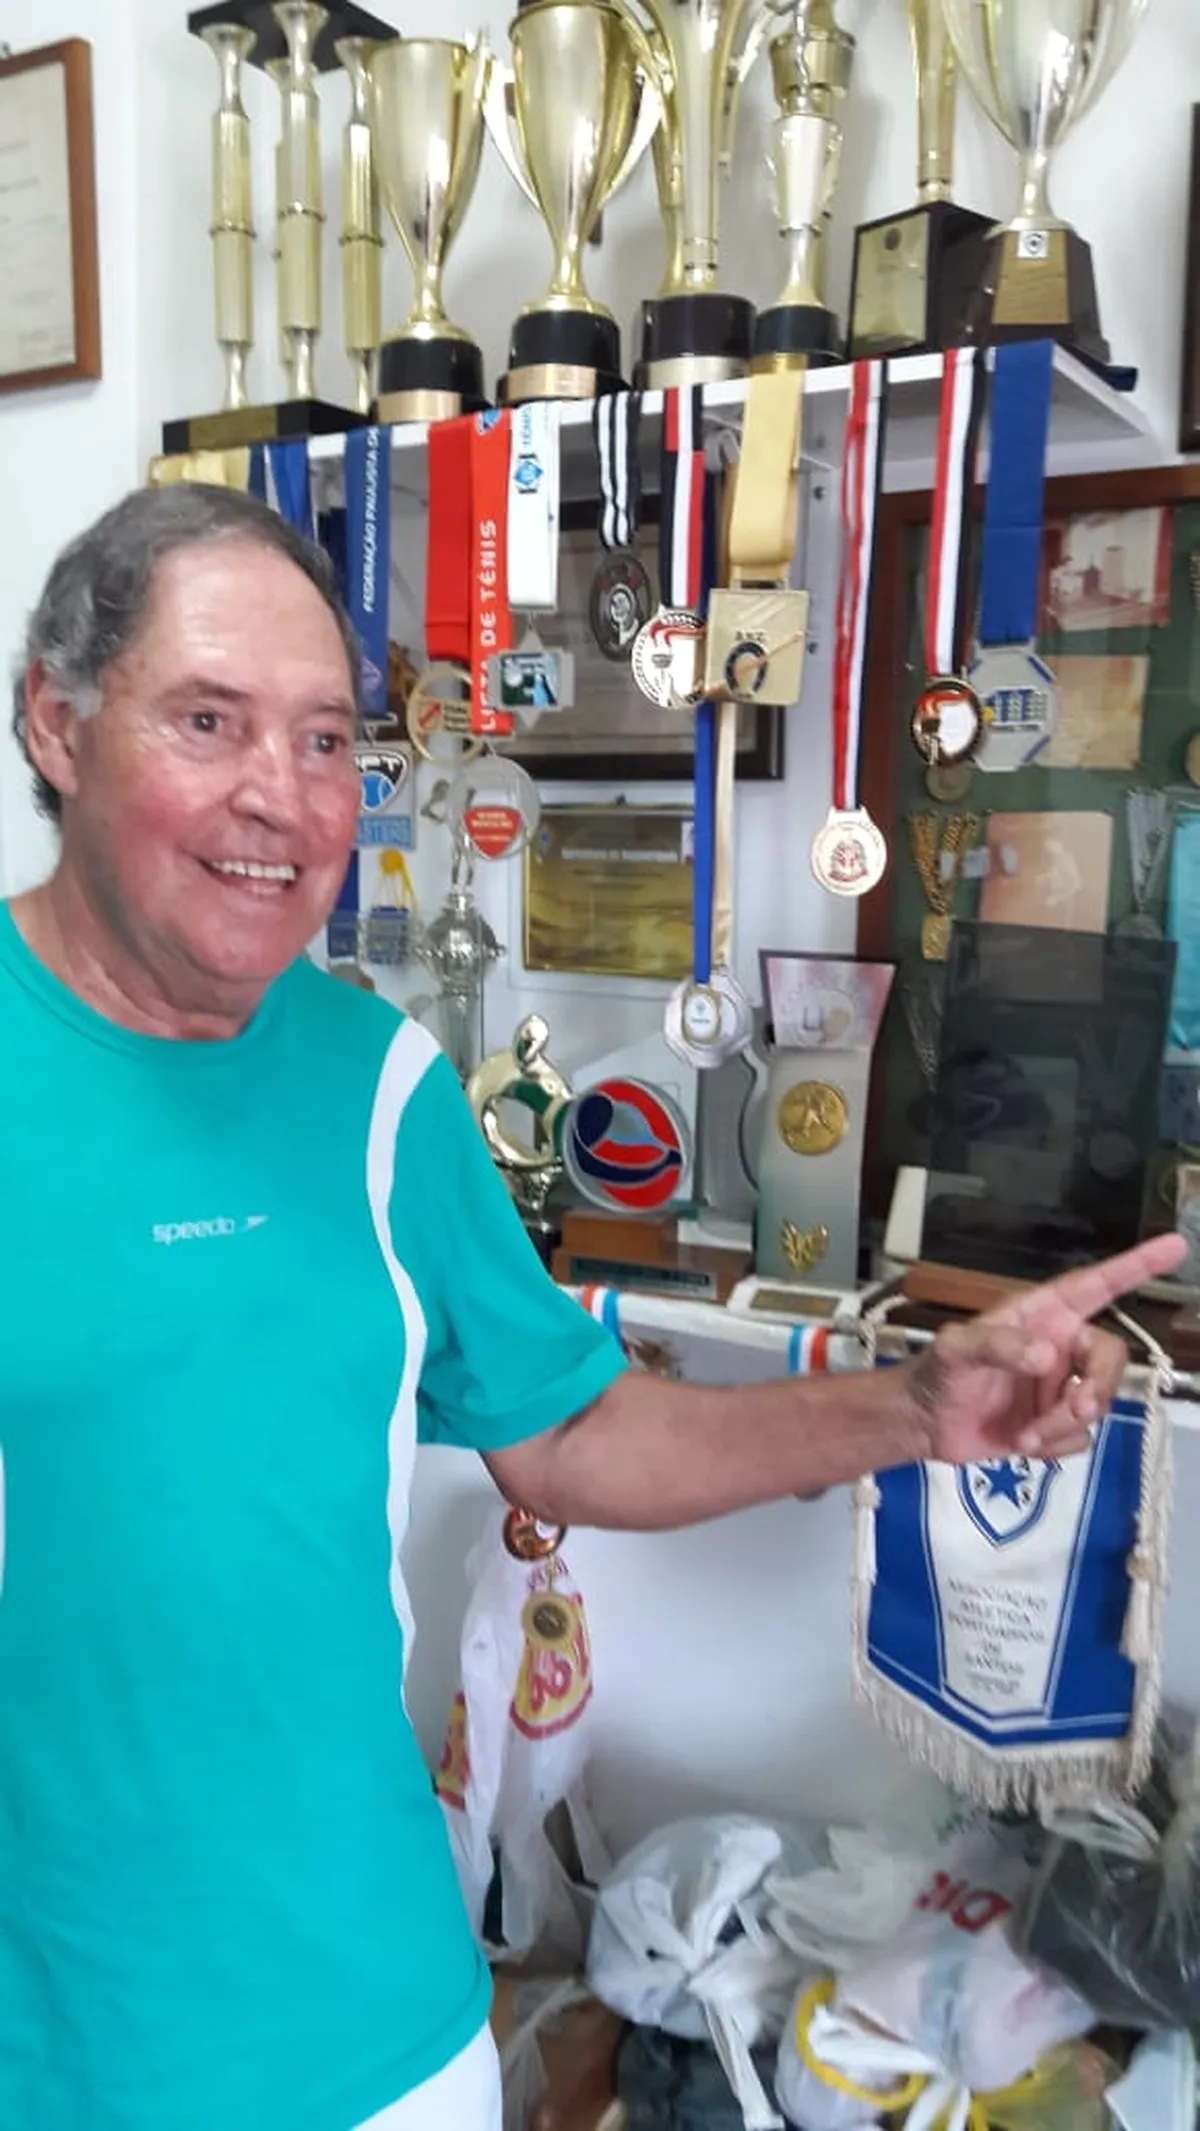 Aos 79 anos tenista brasileiro se destaca em torneios amadores pelo mundo   tênis   ge